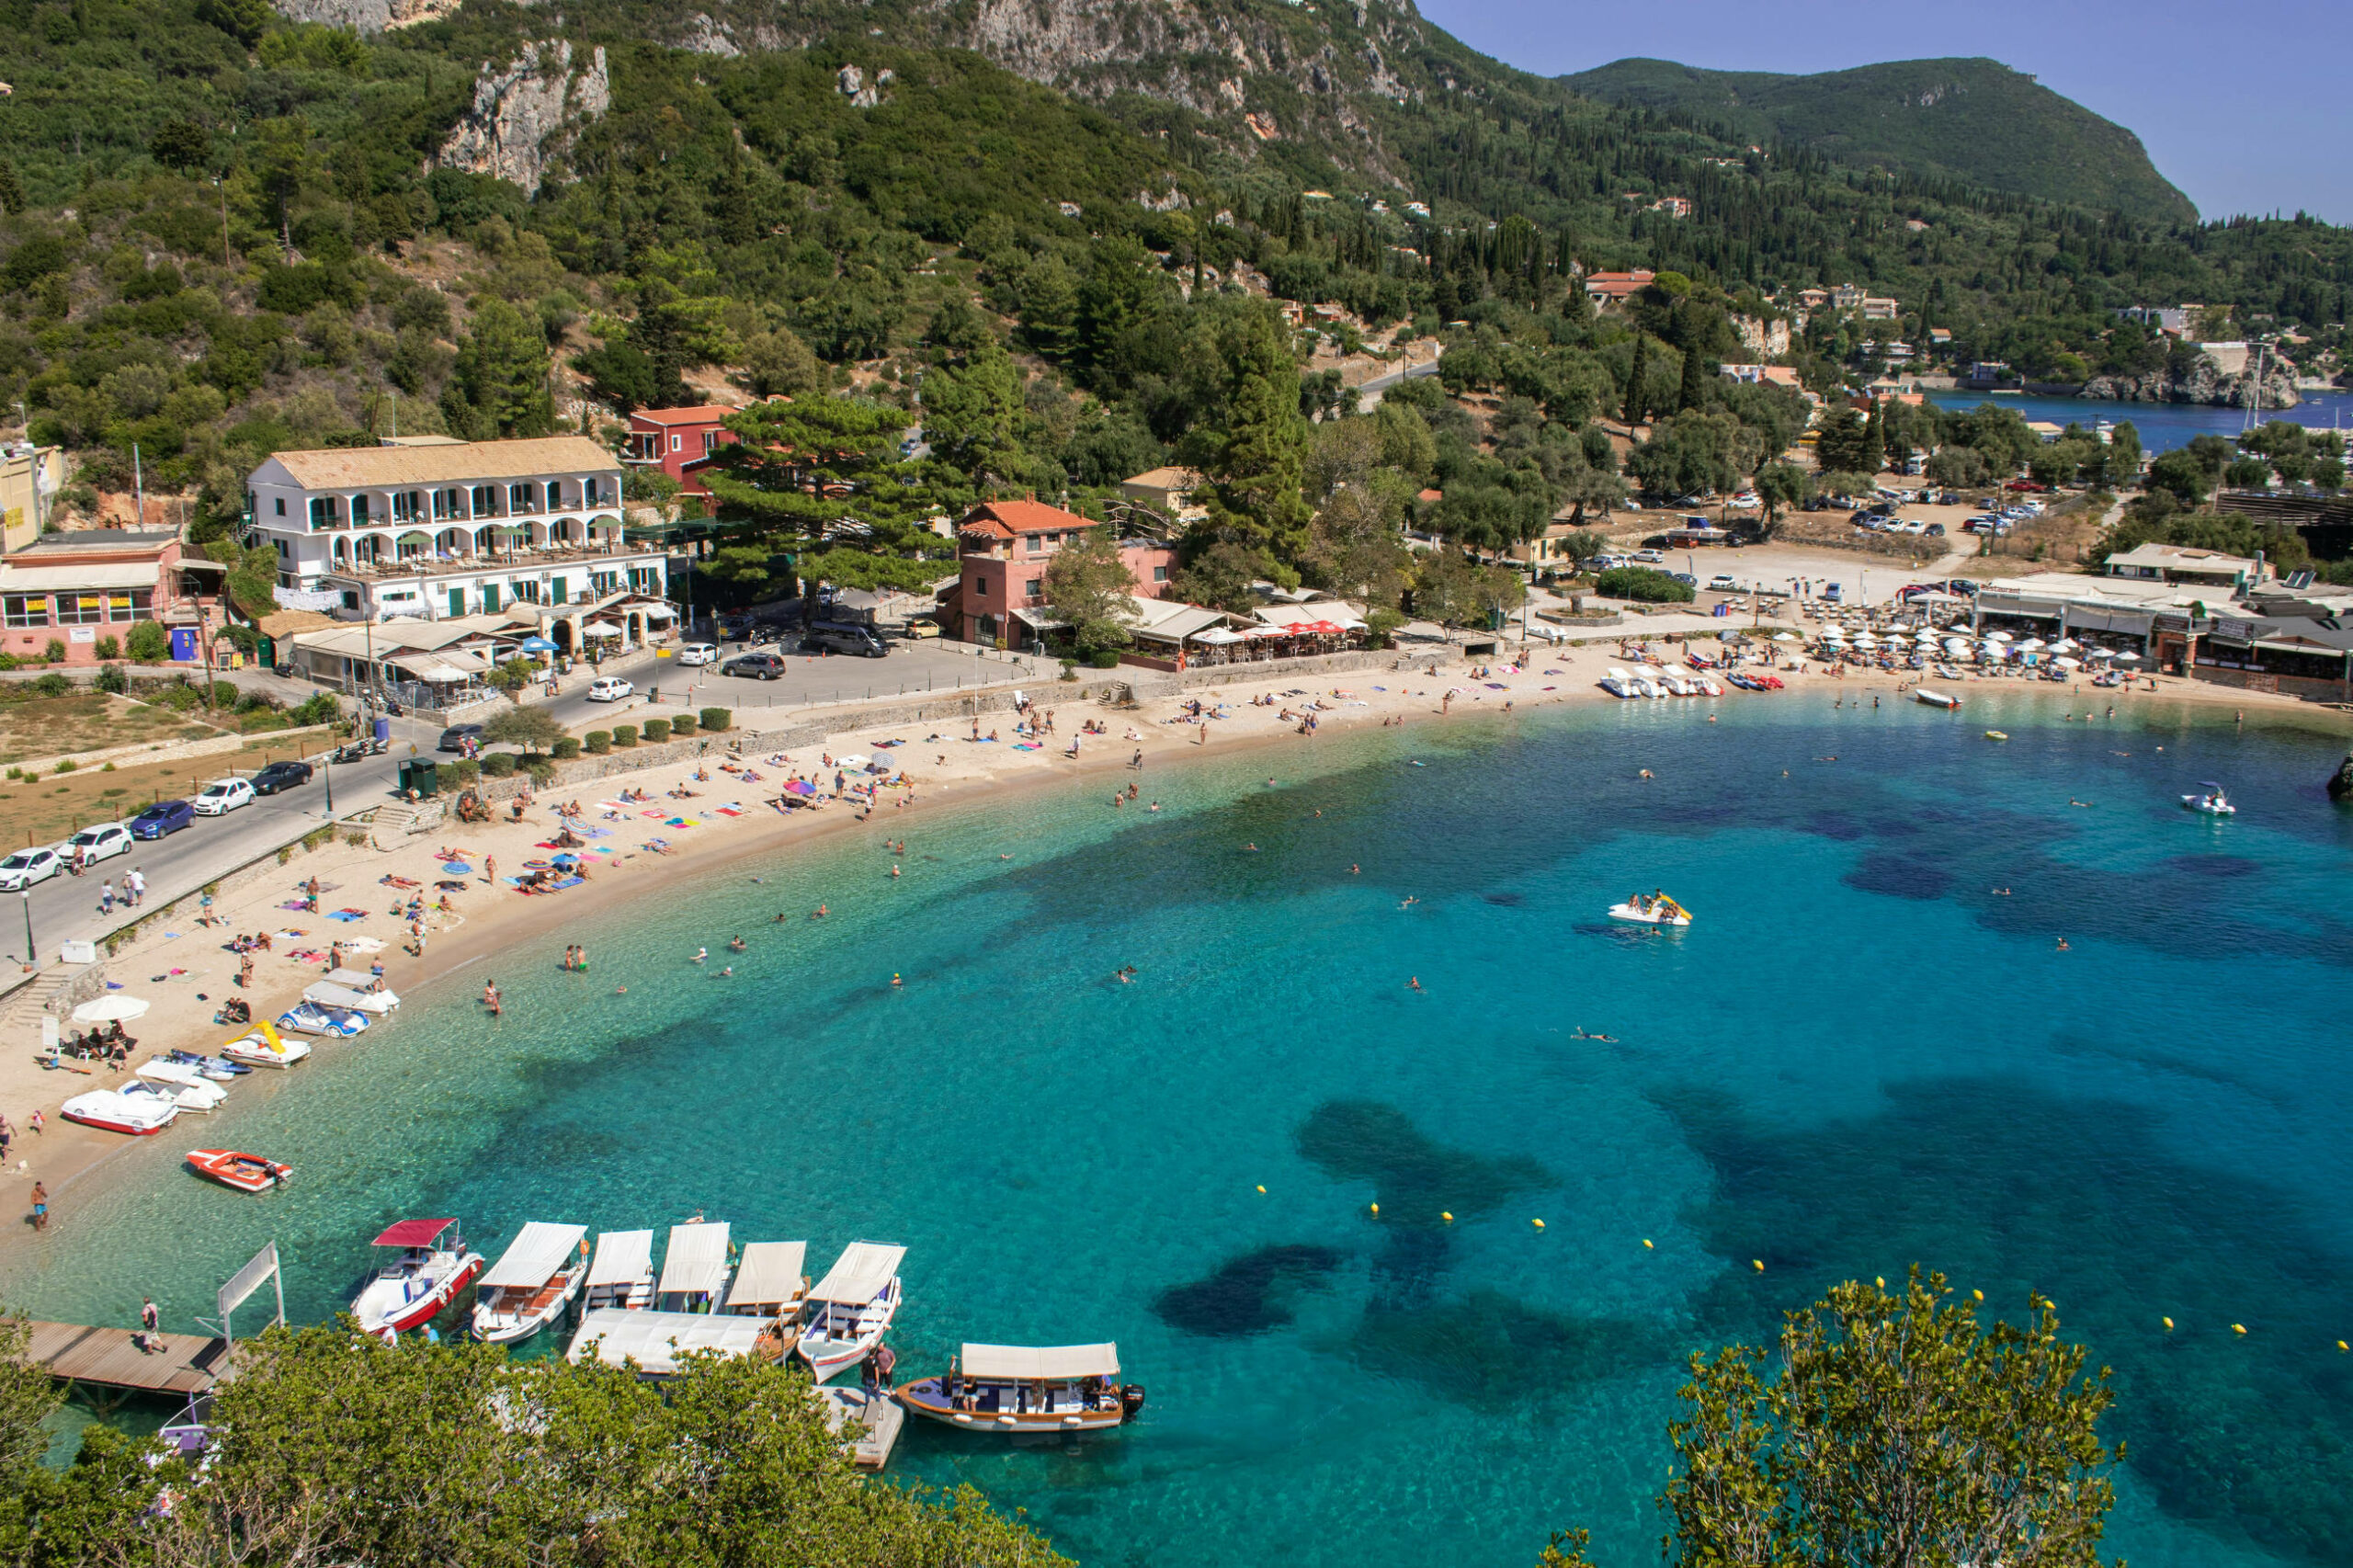 Das Bild zeigt den Strand von Paleokastritsa auf Korfu. Im Vordergrund ist das Meer mit einigen Booten, Schwimmern und Begreunzungsbojen. Weiter hinten im Bild sind Menschen am Strand sowie Straßen mit Autos und Häuser. Im Hintergrund sind grüne Berge.